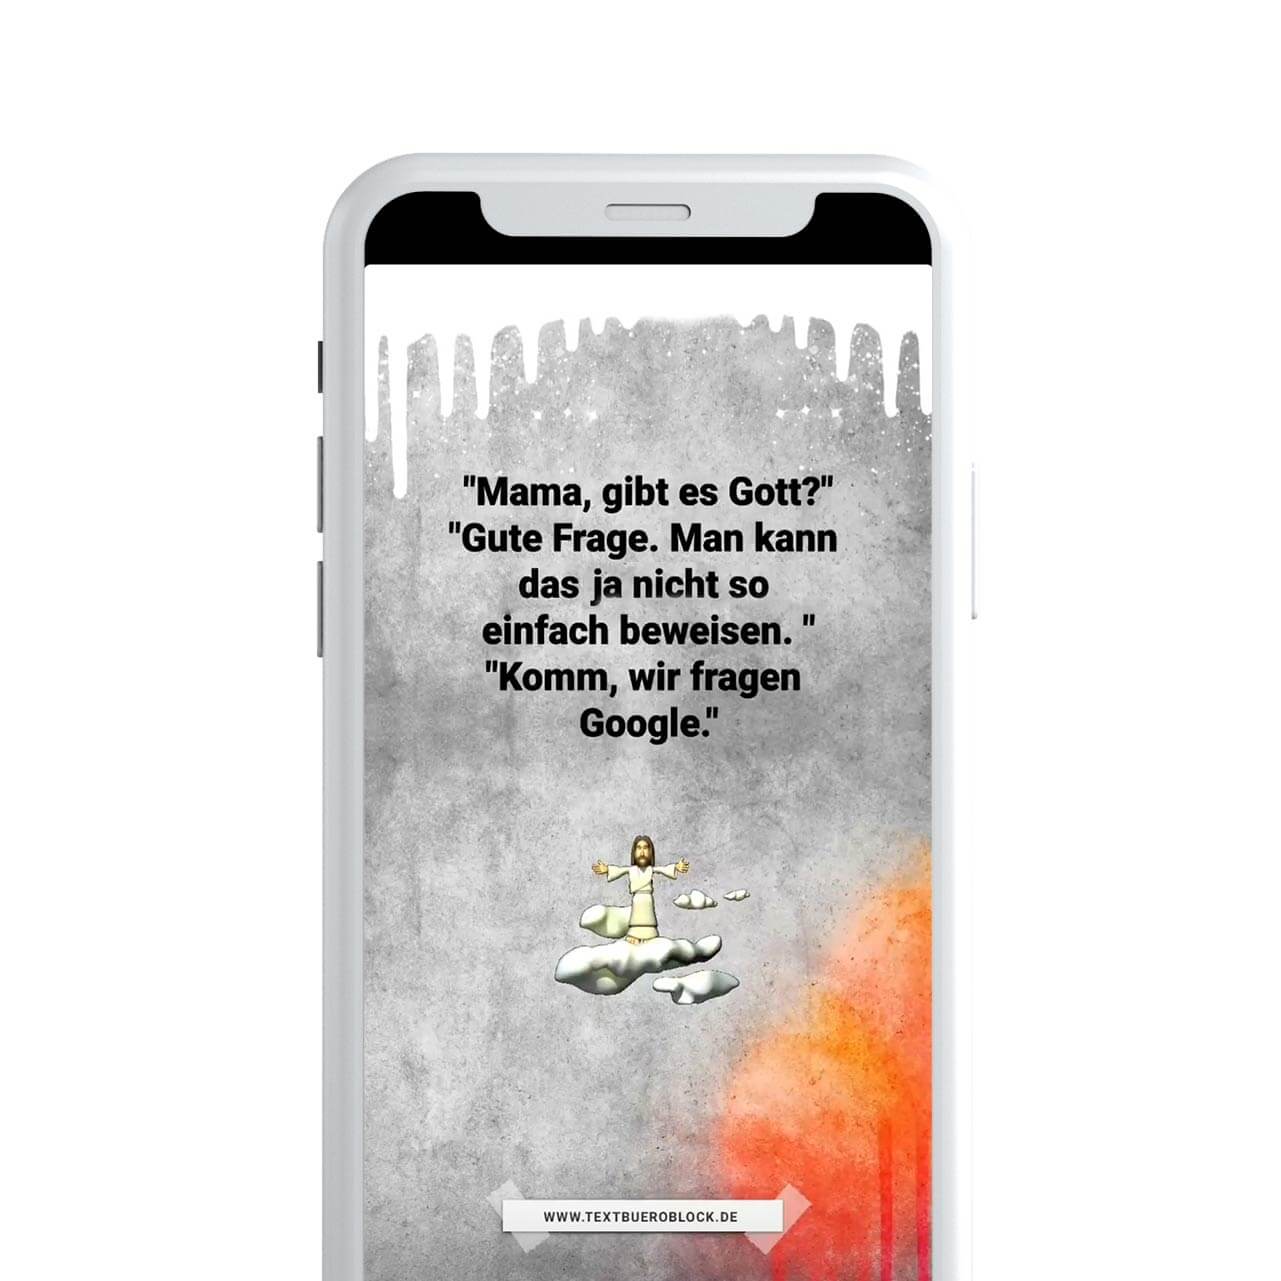 Ein iPhone mit dem neuen Instagram Feed Design für Textbüro Lena Block